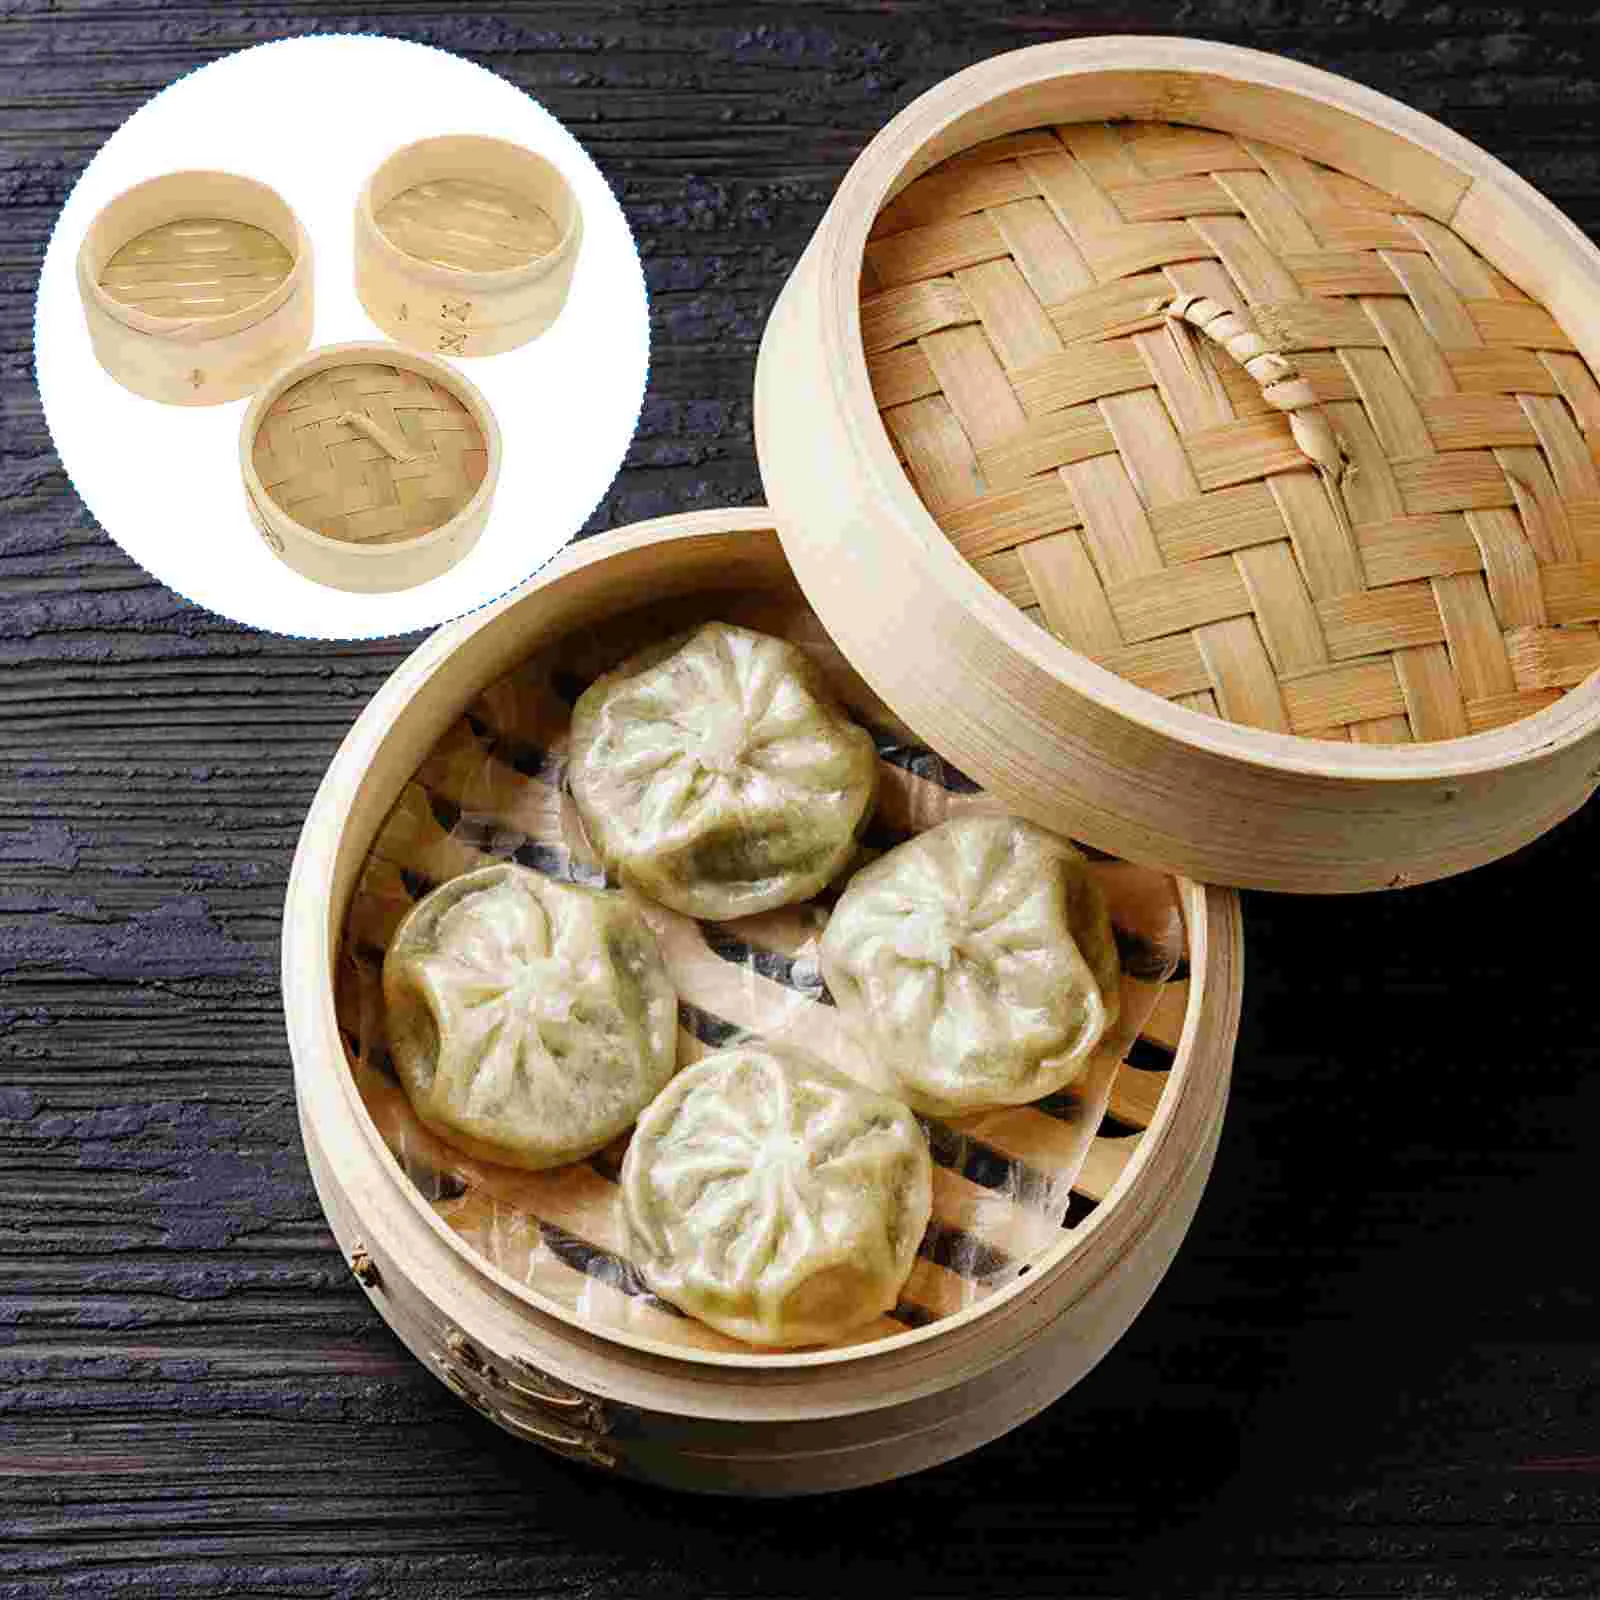 

Steamer Basket Bamboodumpling Dim Sum Chinese Pot Wooden Rice Kitchen Dumplings Bun Steam Asian Vegetable Steaming Cooking Set